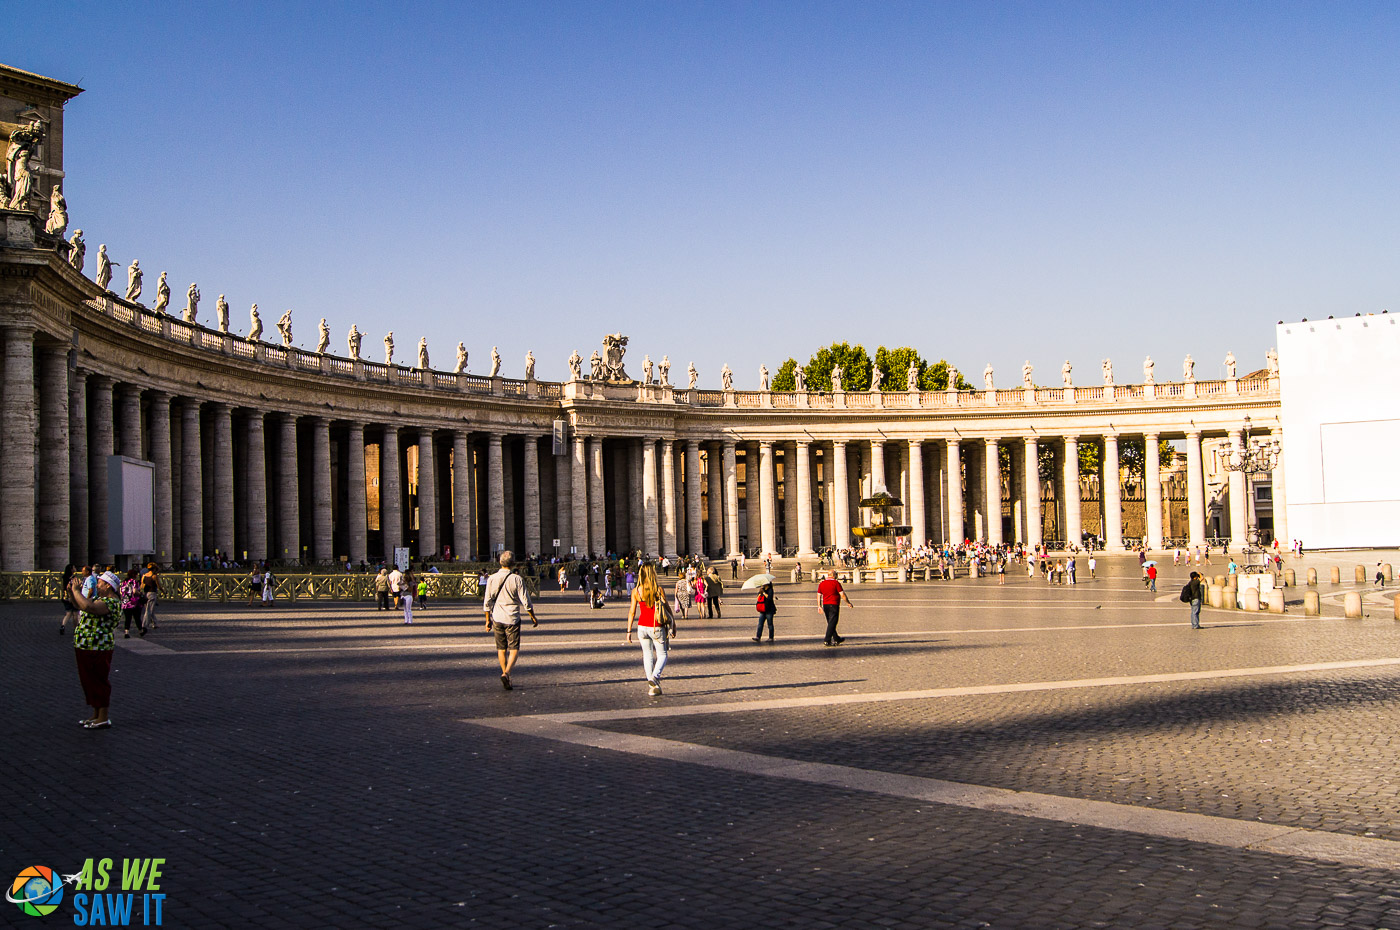 Бернини окружил площадь колоссальной колоннадой Построен для того, чтобы принять посетителей в «материнские объятия Матери-Церкви»